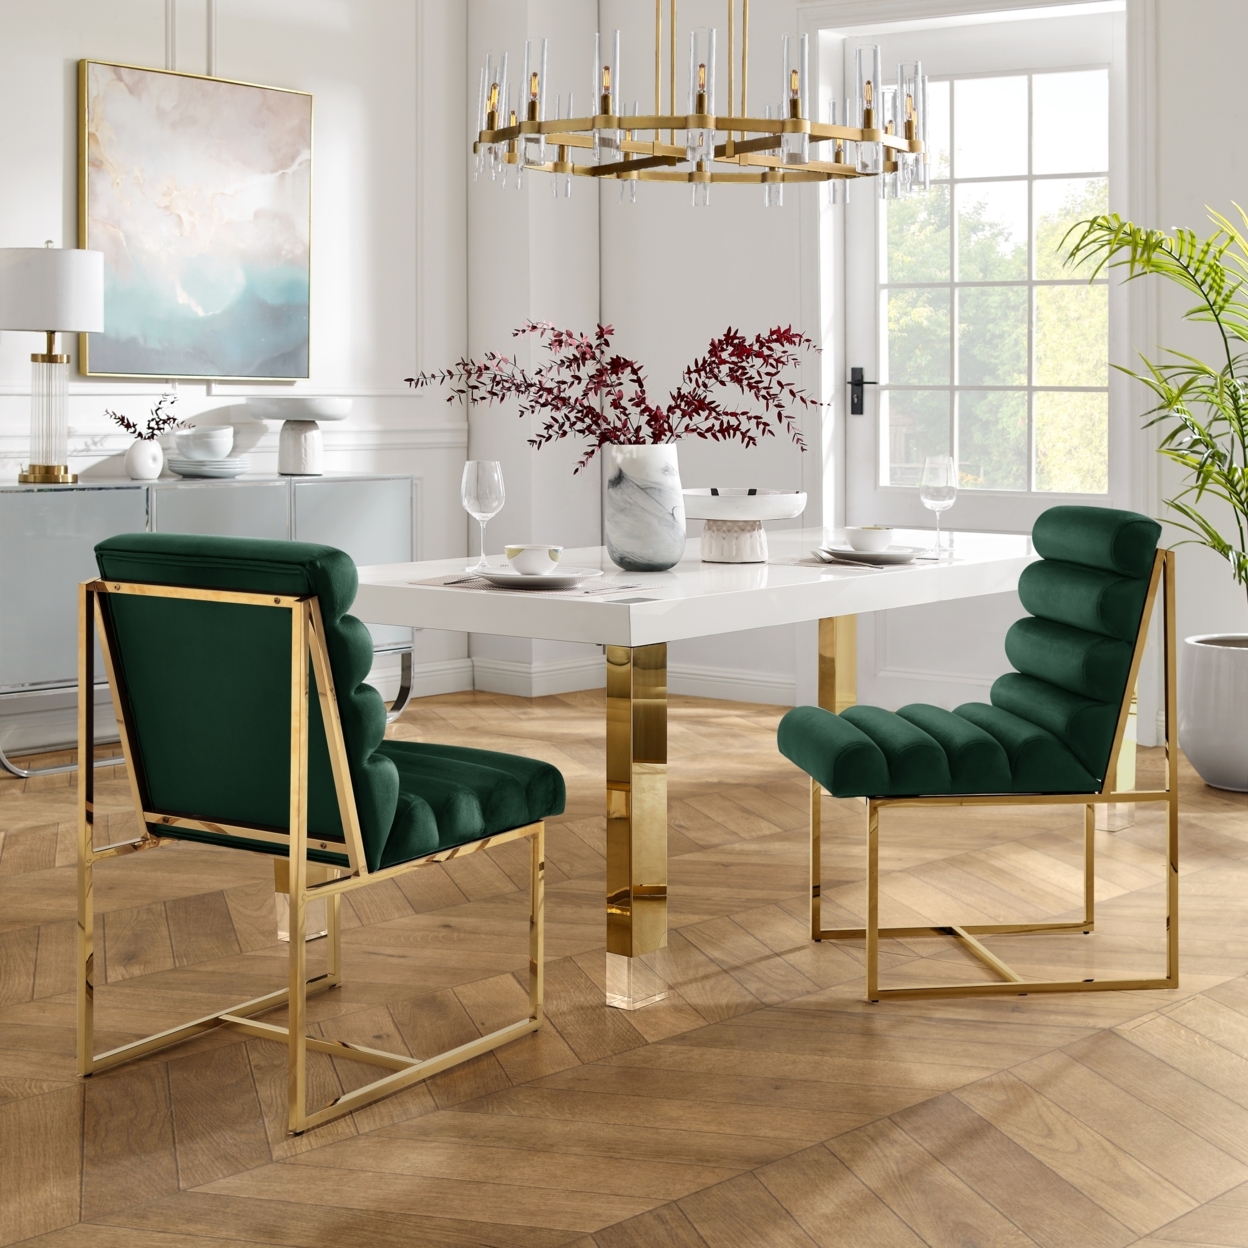 Madelyne Dining Chair - Upholstered, Stainless Steel Frame, Channel Tufted, Armless - Velvet Hunter Green/gold